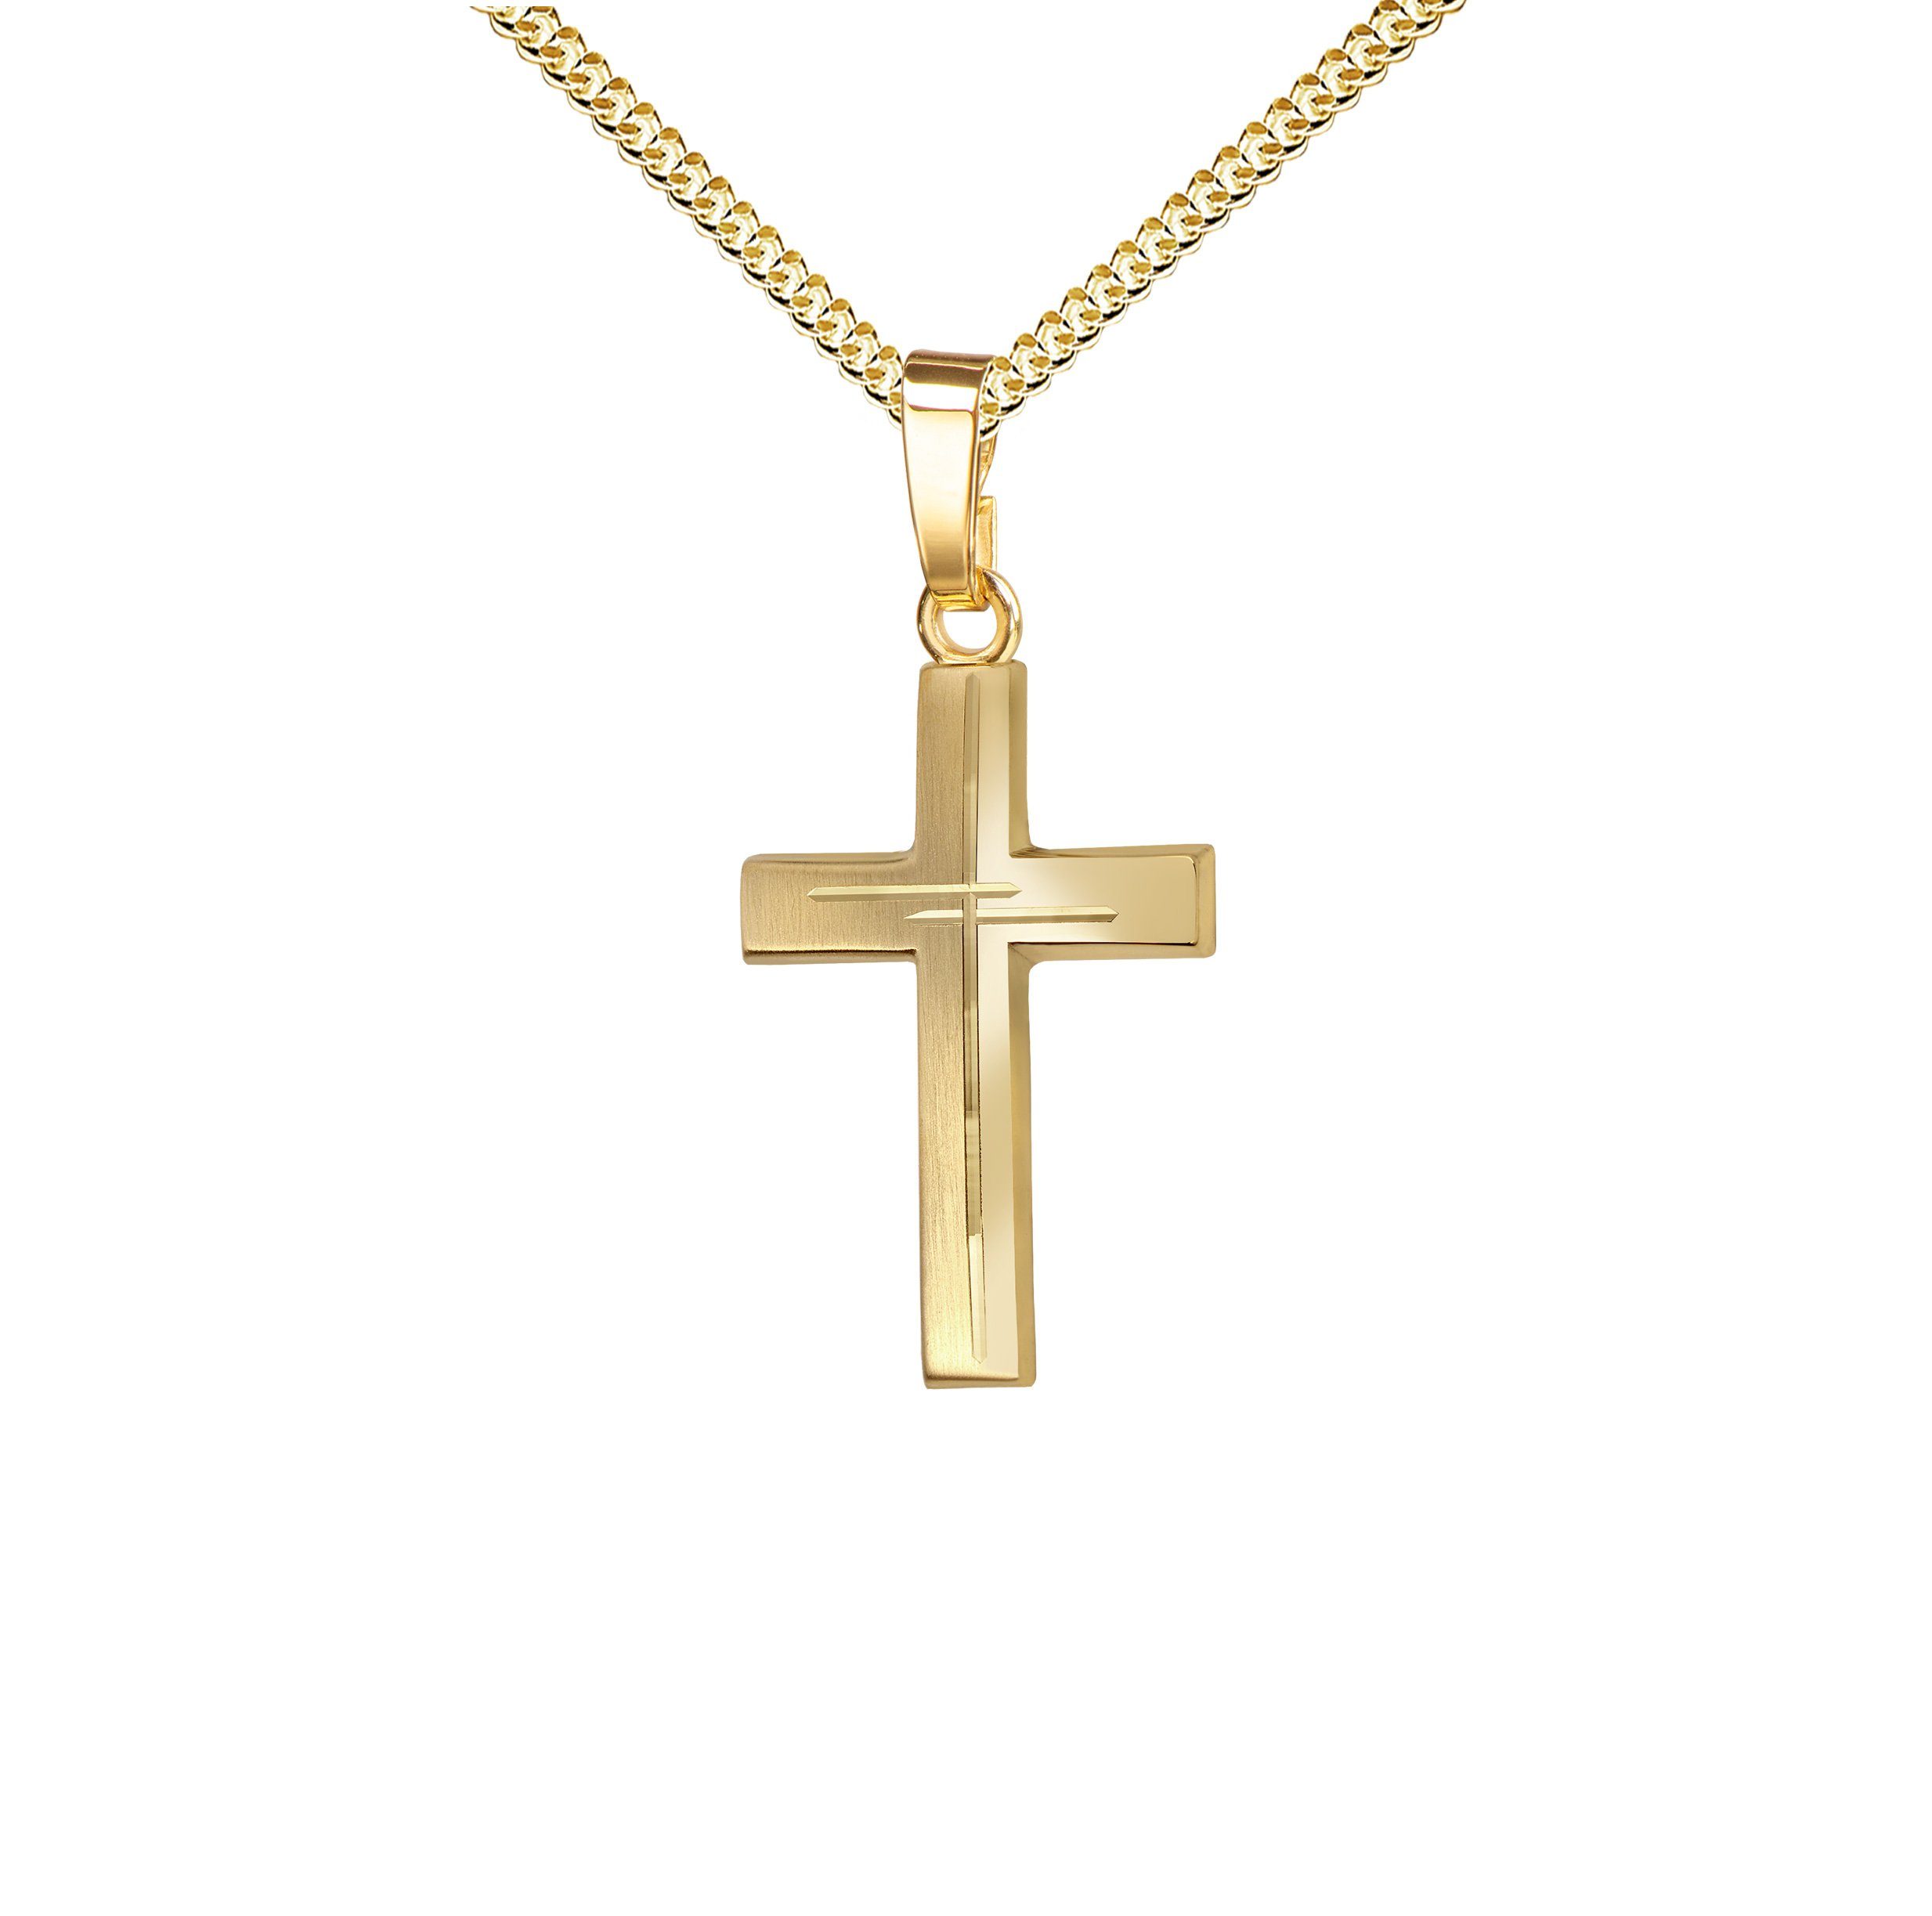 JEVELION Kreuzkette Diamantschliff Kreuz Anhänger 750 Gold - Made in Germany (Goldkreuz, für Damen und Herren), Mit Kette vergoldet- Länge wählbar 36 - 70 cm.